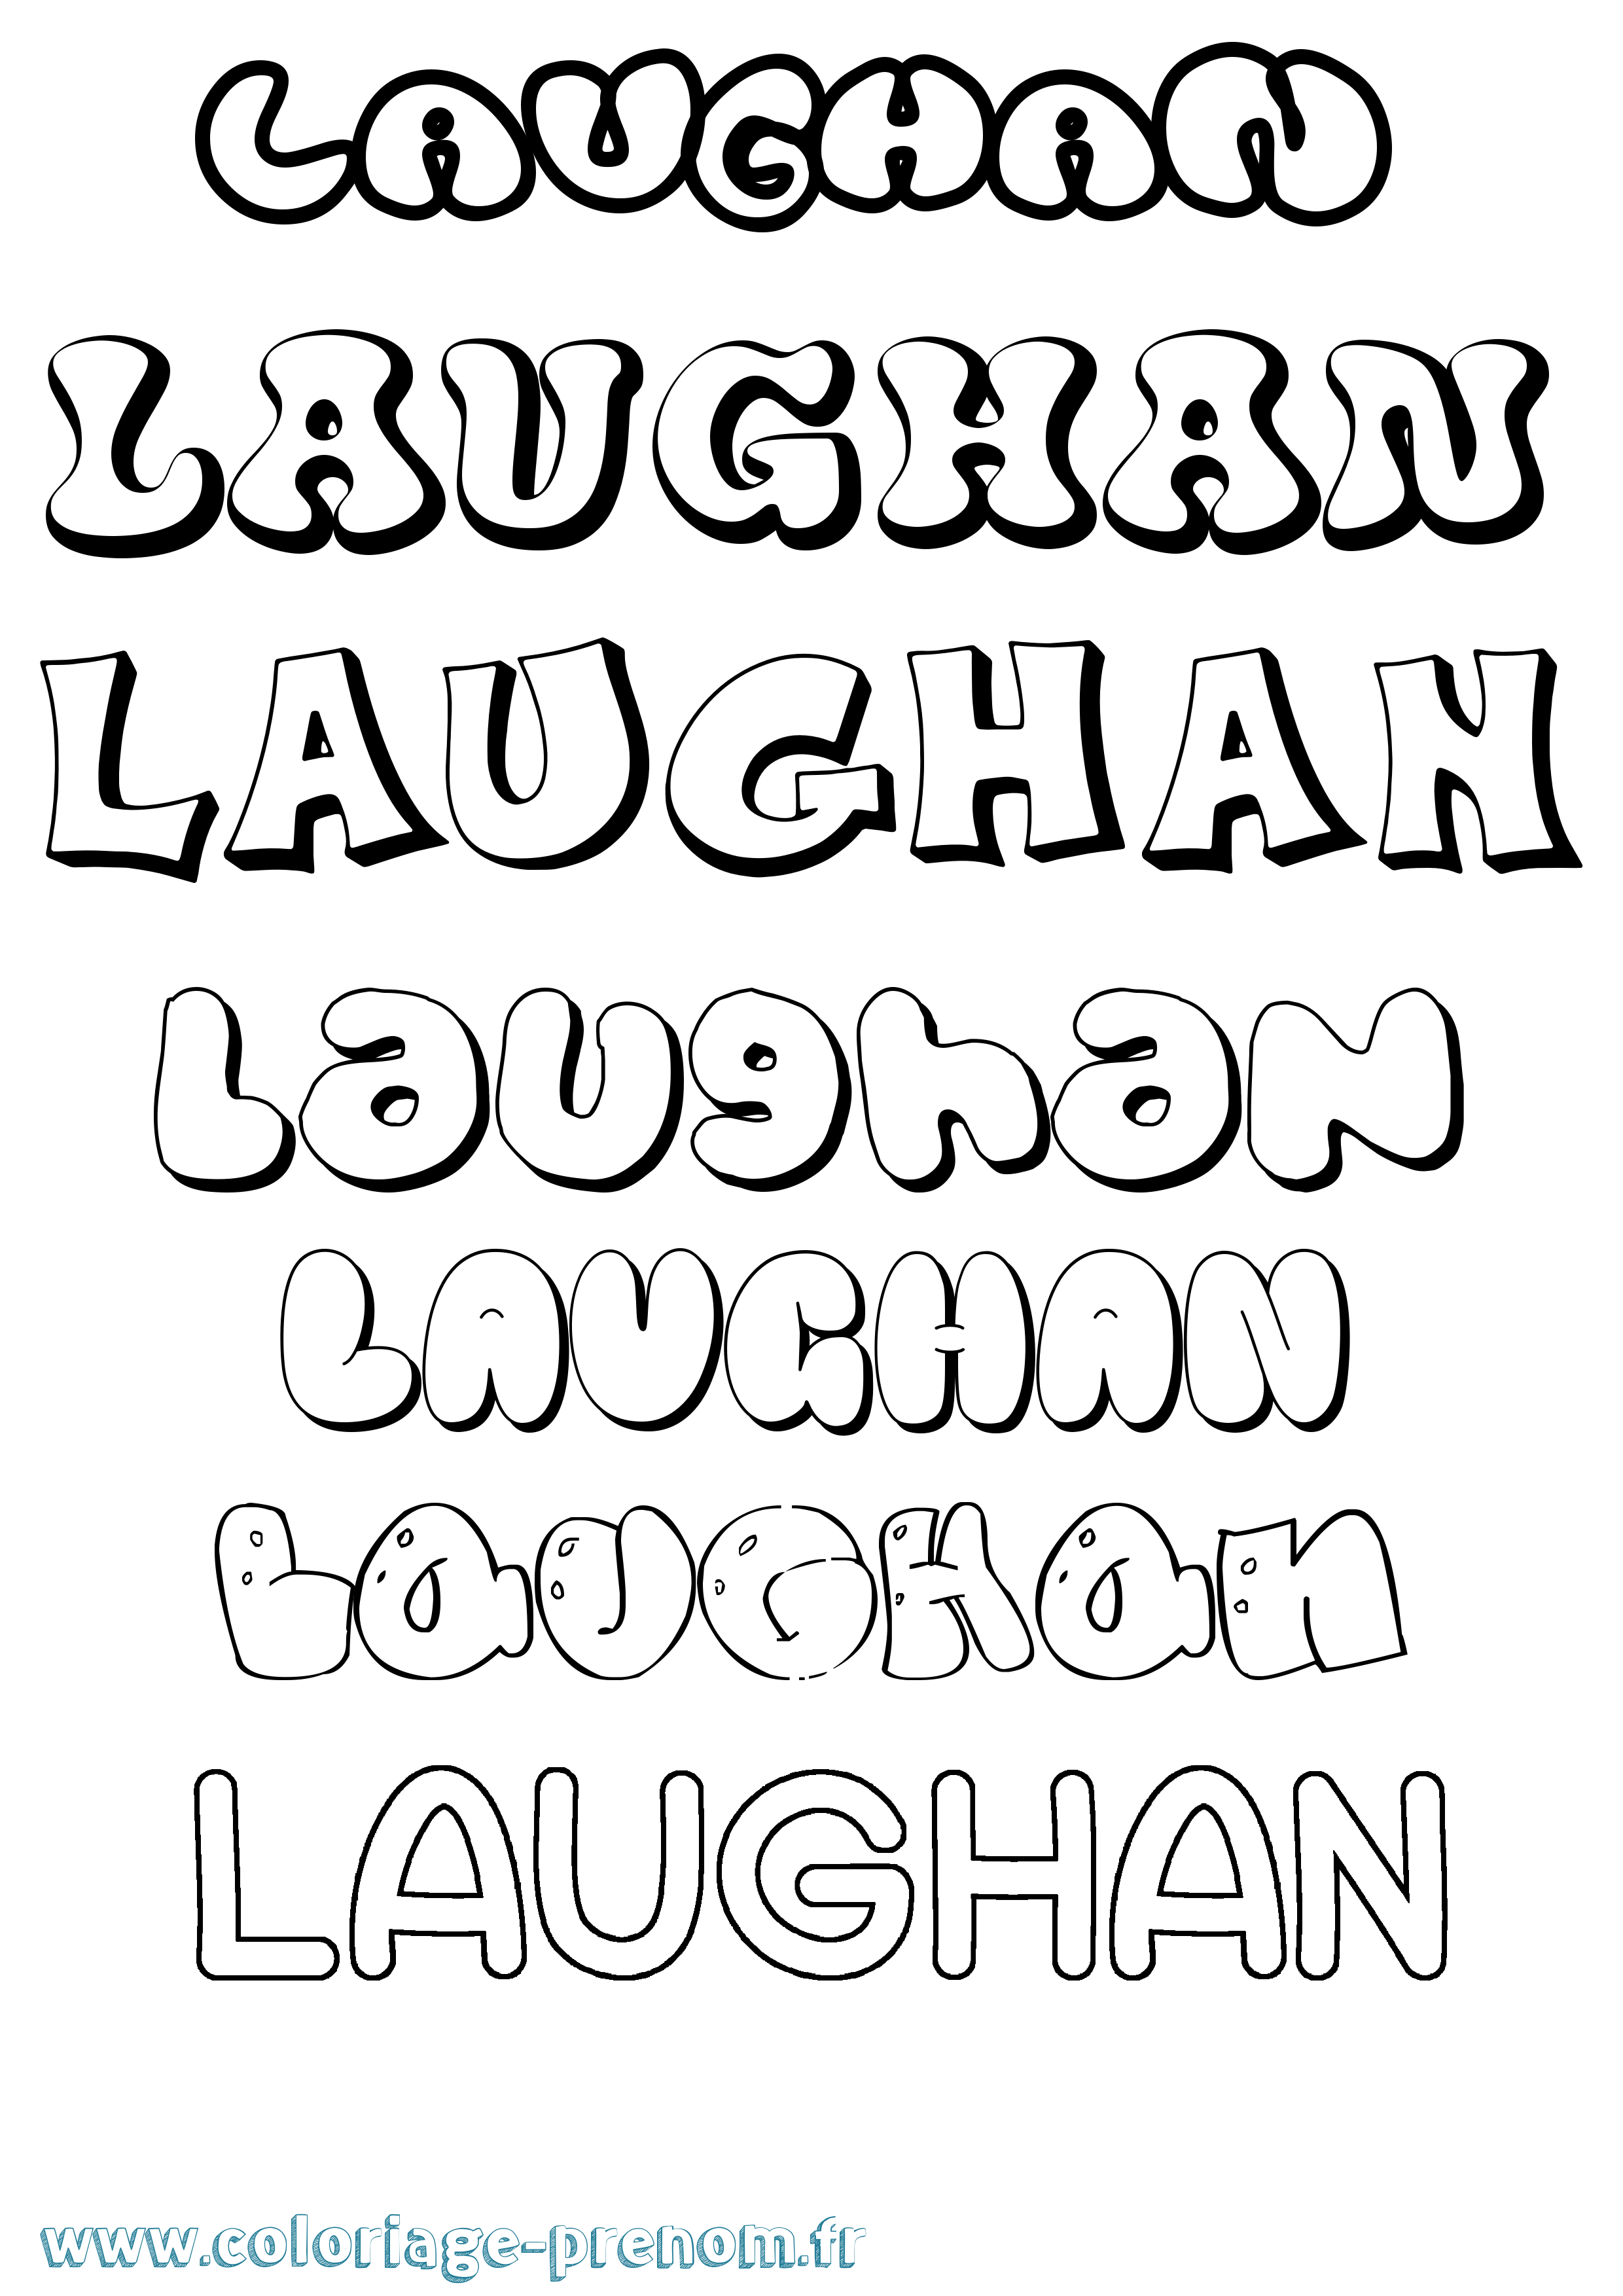 Coloriage prénom Laughan Bubble